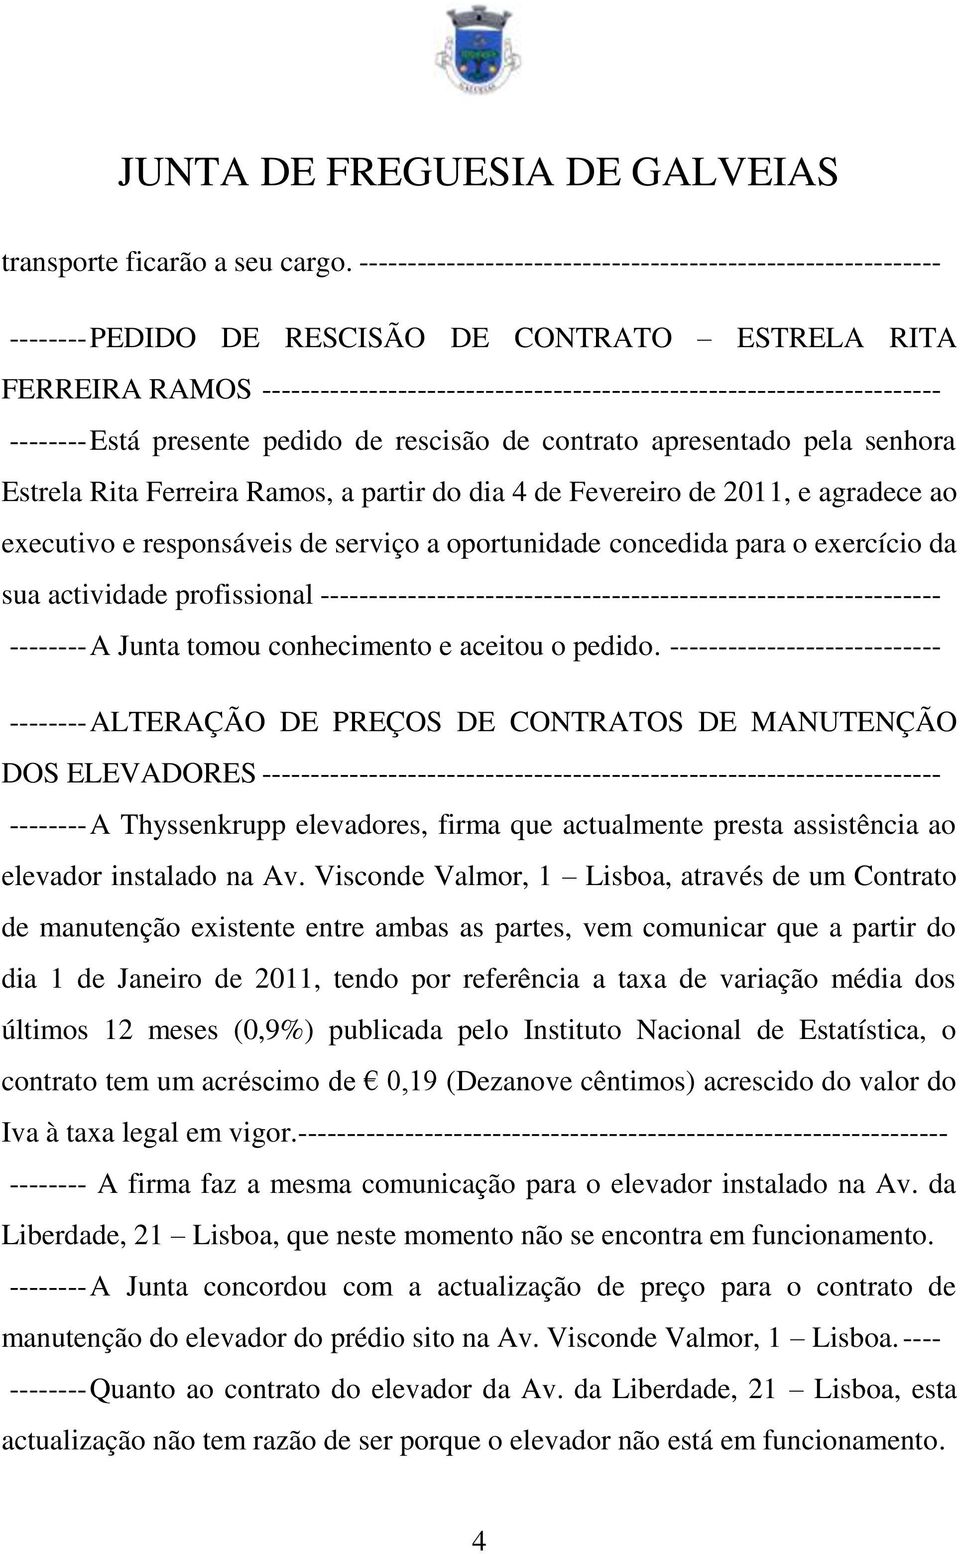 -------- Está presente pedido de rescisão de contrato apresentado pela senhora Estrela Rita Ferreira Ramos, a partir do dia 4 de Fevereiro de 2011, e agradece ao executivo e responsáveis de serviço a